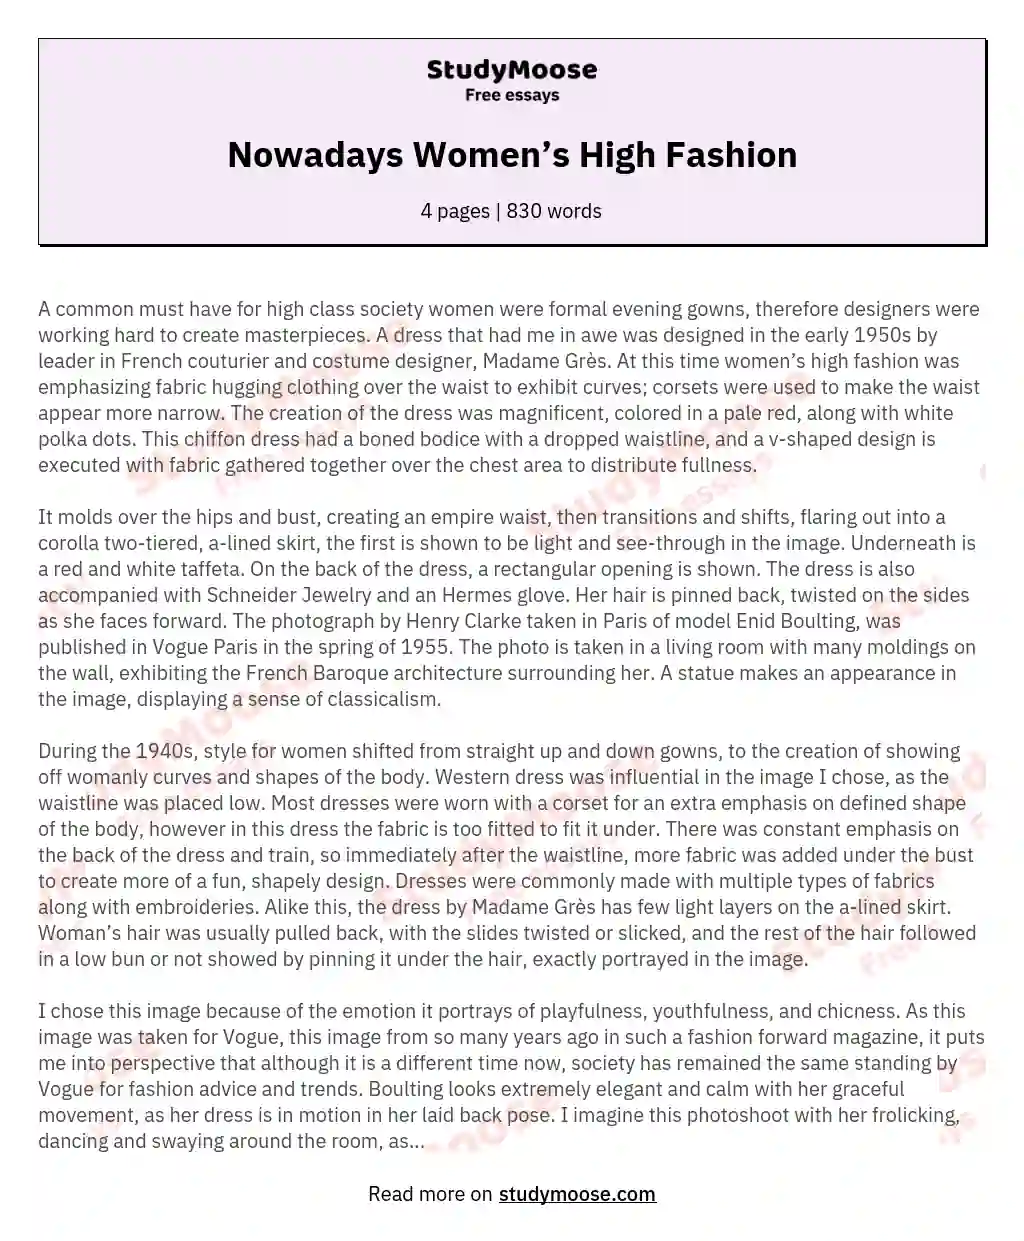 Nowadays Women’s High Fashion essay